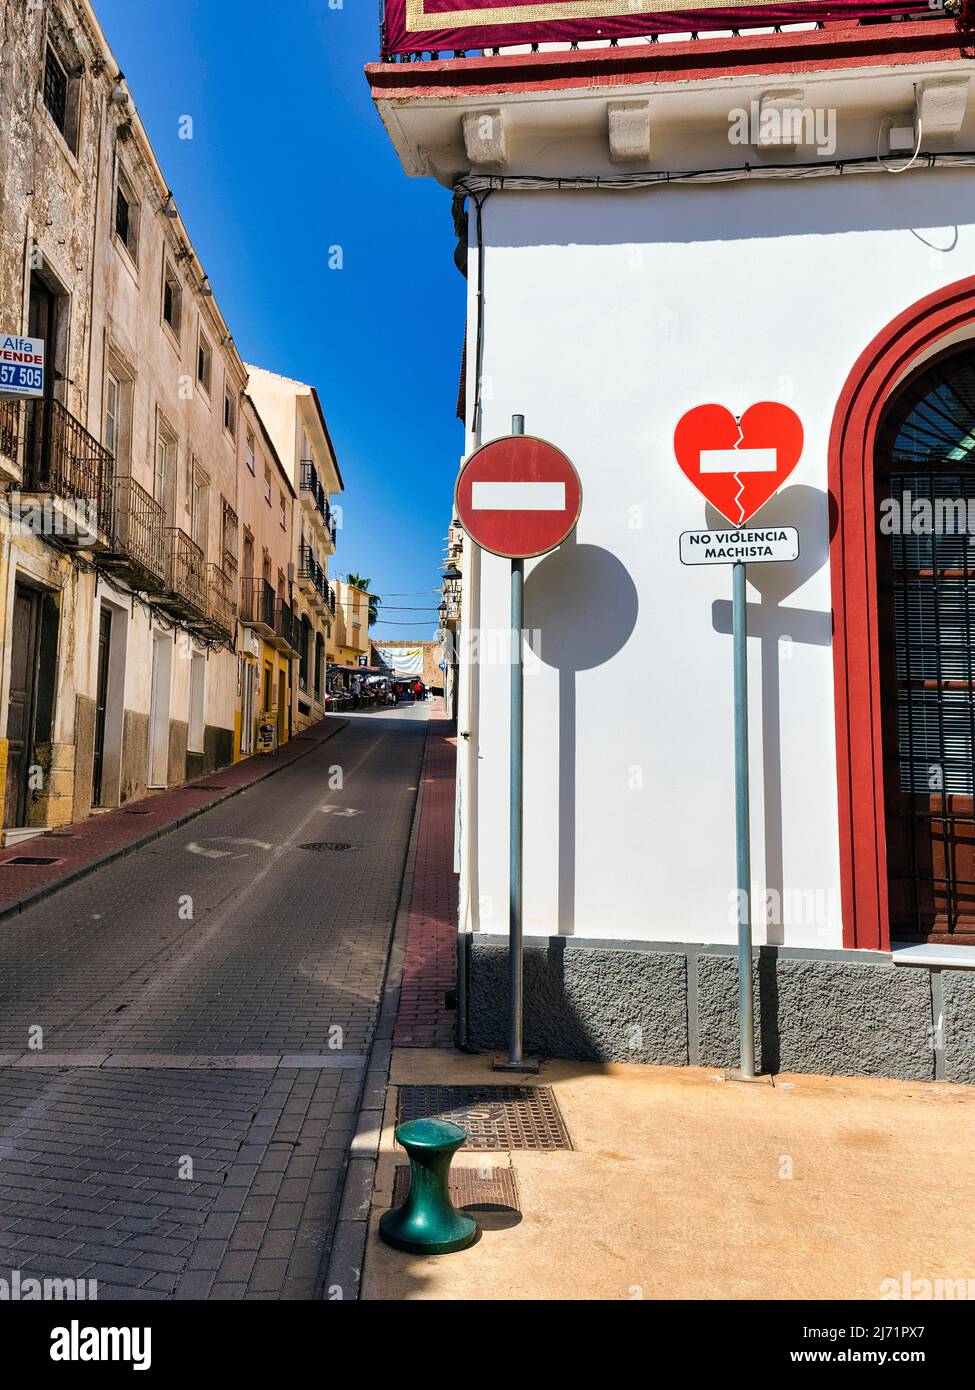 Zwei Verkehrsschilder in der Altstadt, Einfahrt verboten, gebrochenes Herz, Aufschrift No Violencia Machista in einer Kampagne gegen haeusliche Foto Stock